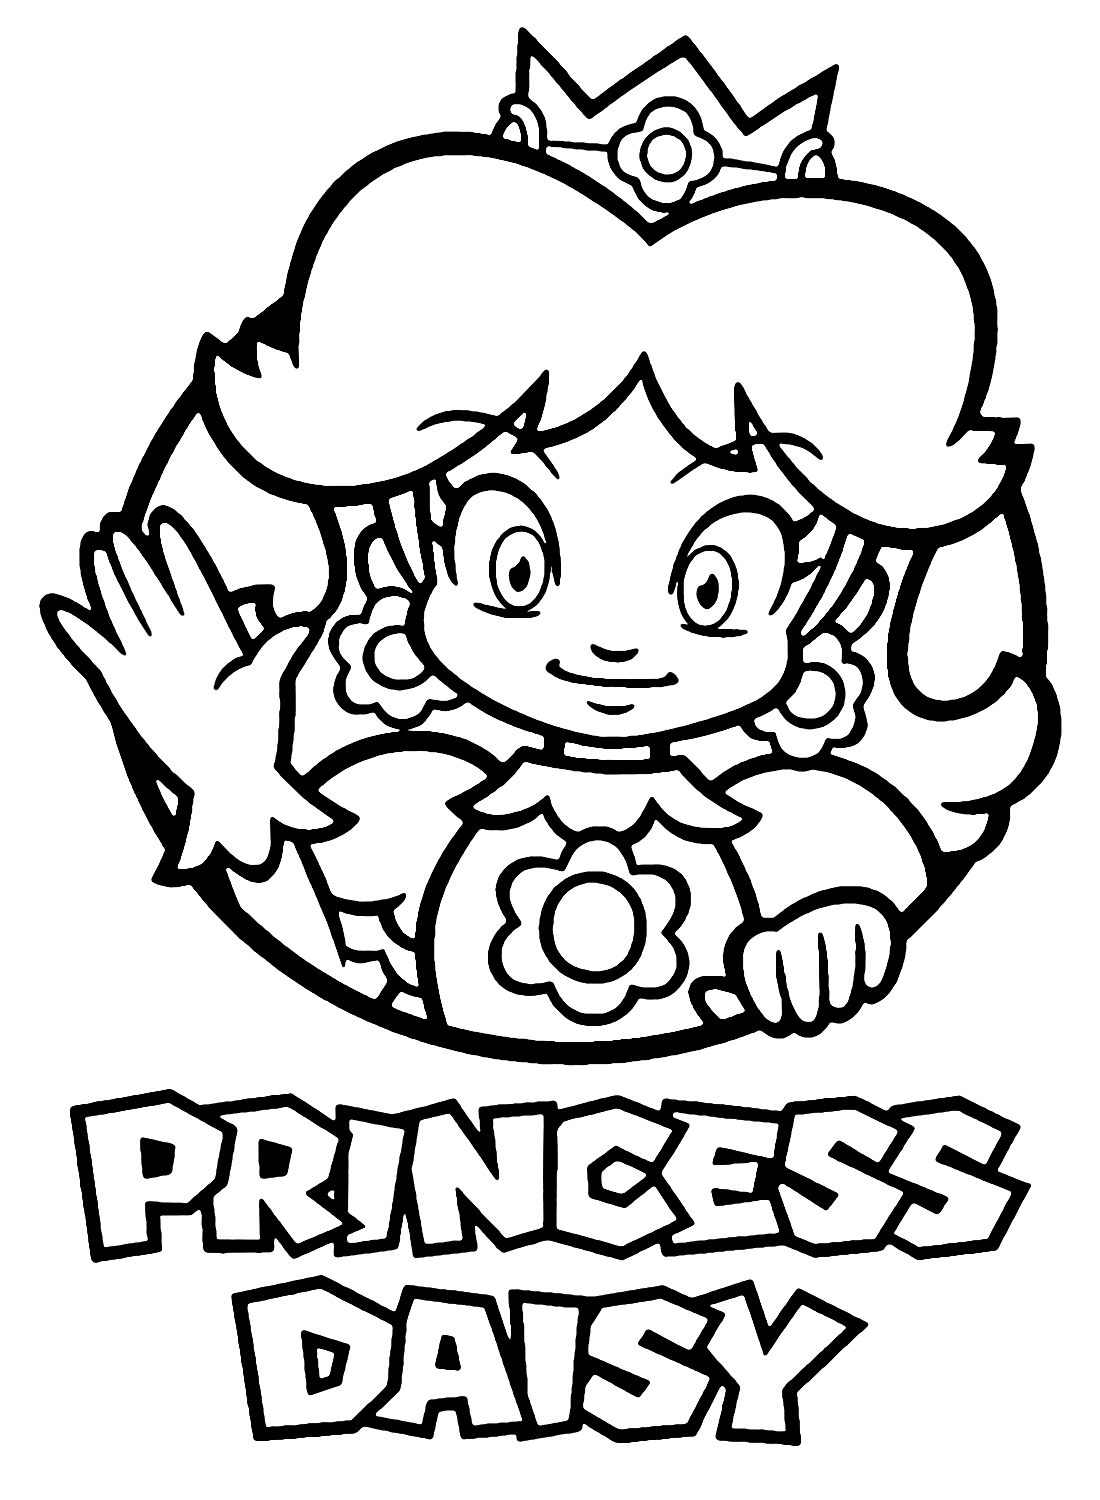 Super Mario Bros Princesa Daisy de La Princesa Daisy